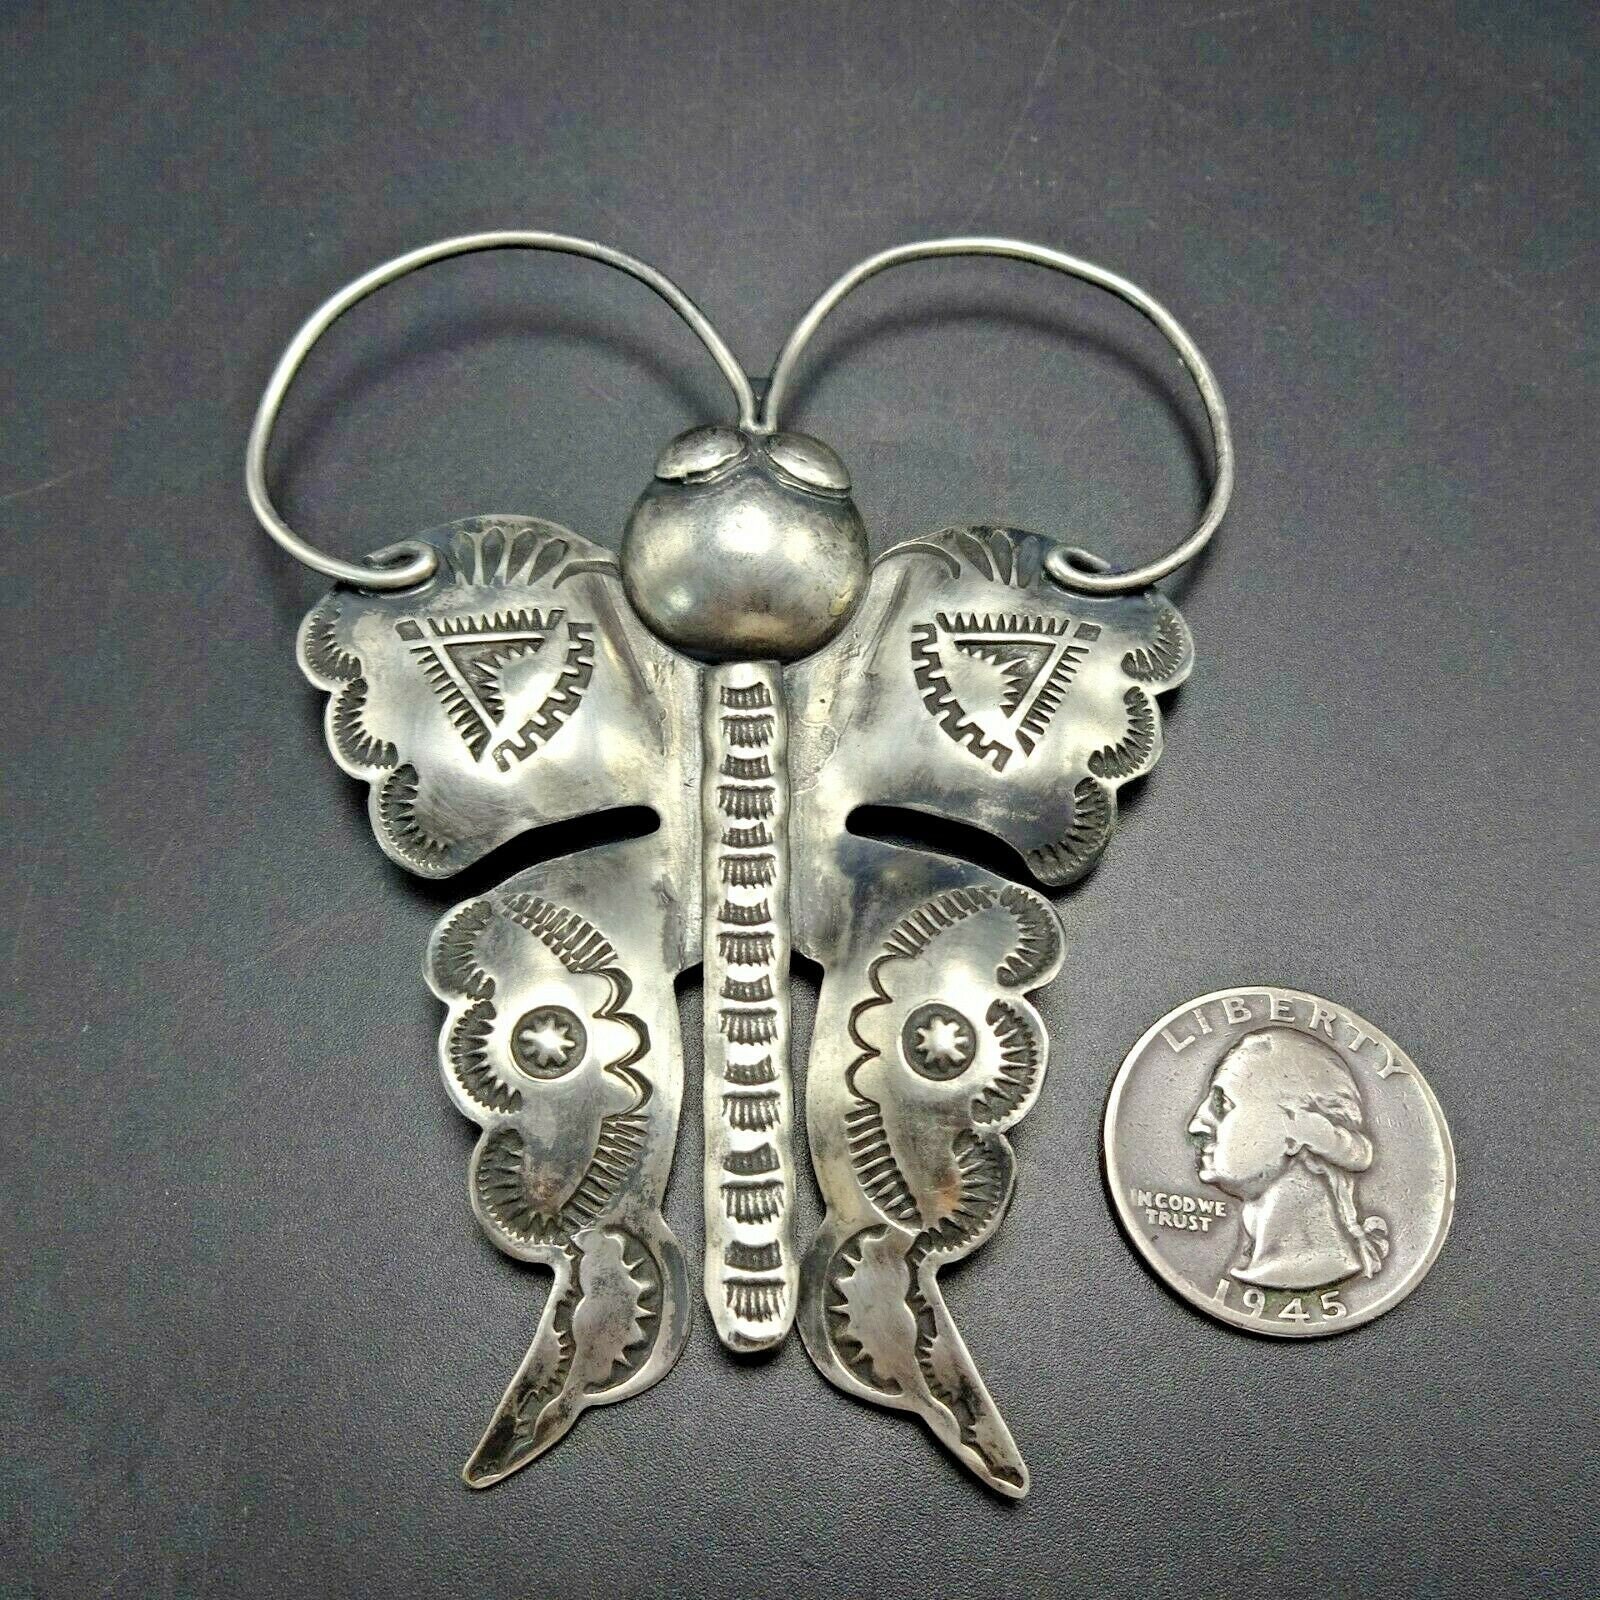 Joe Eby Butterfly Pin